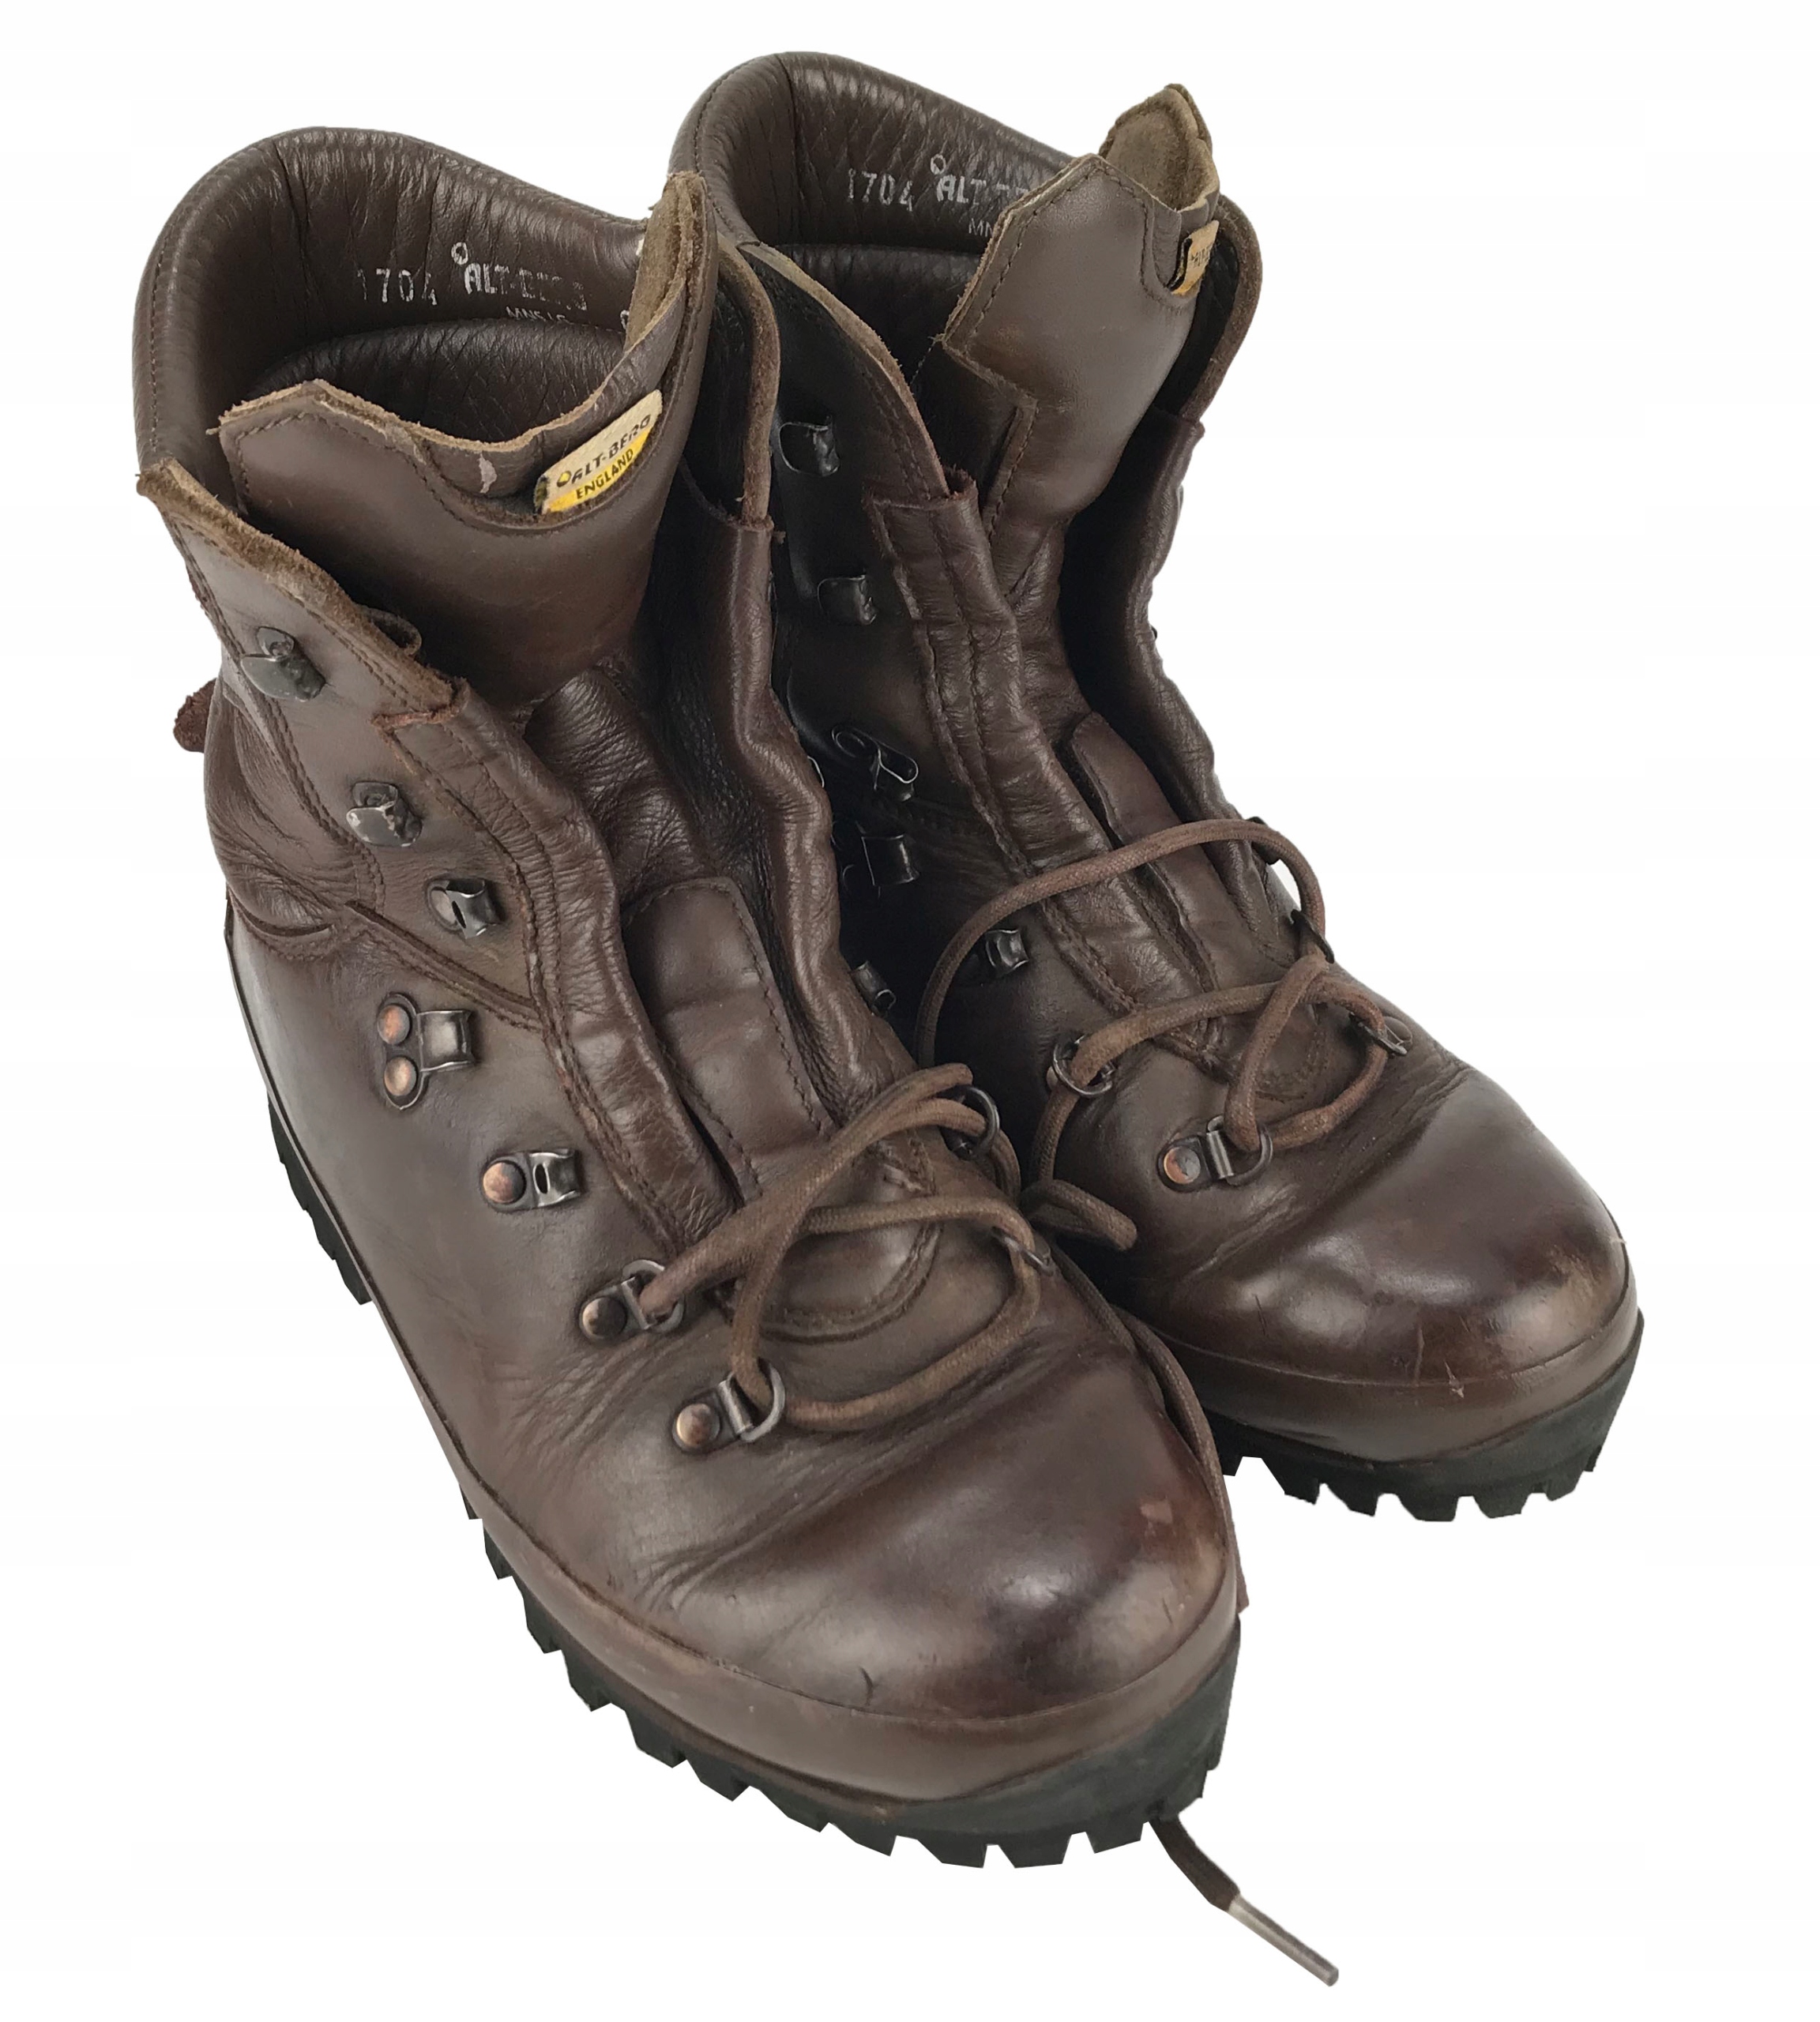 Combat boots rust фото 56